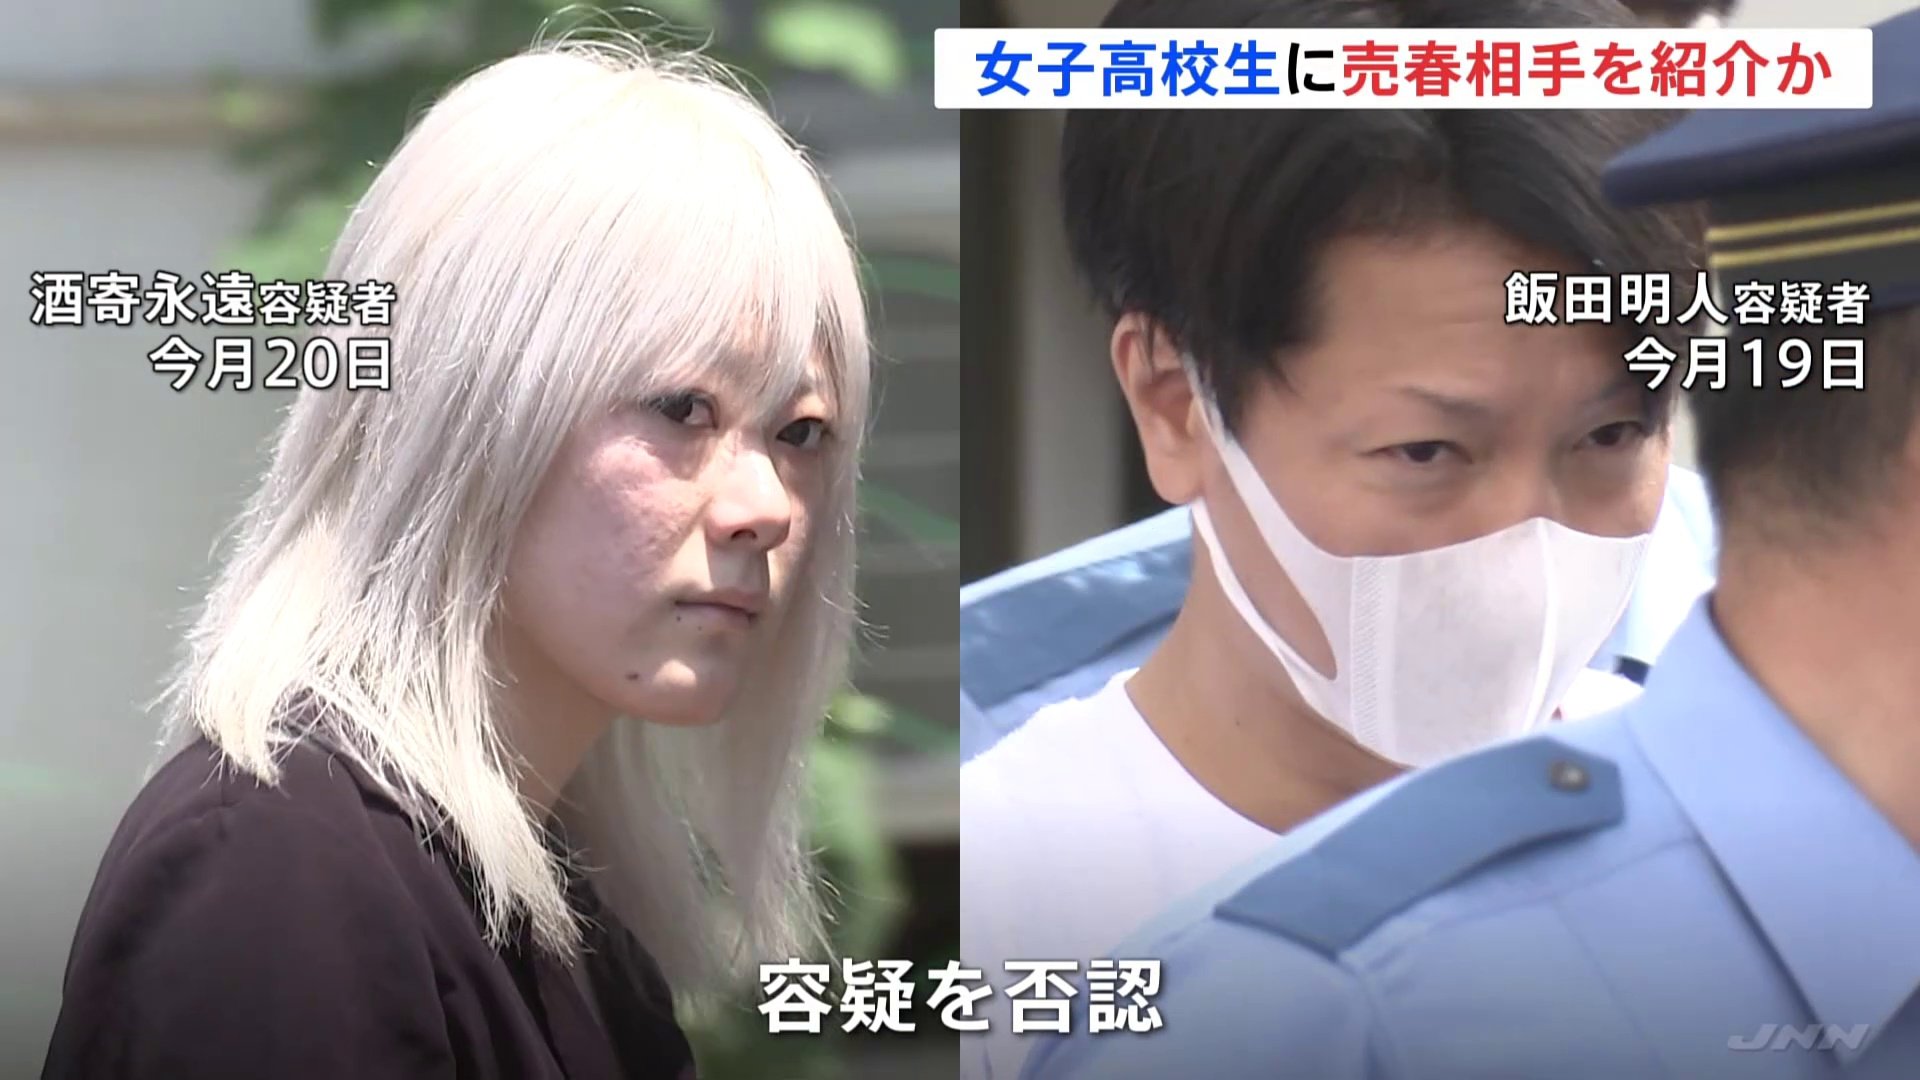 新宿・歌舞伎町周辺で15歳女子高校生に売春相手を紹介か 21歳女らを逮捕 「ホテル内で何をしたかは知らない」